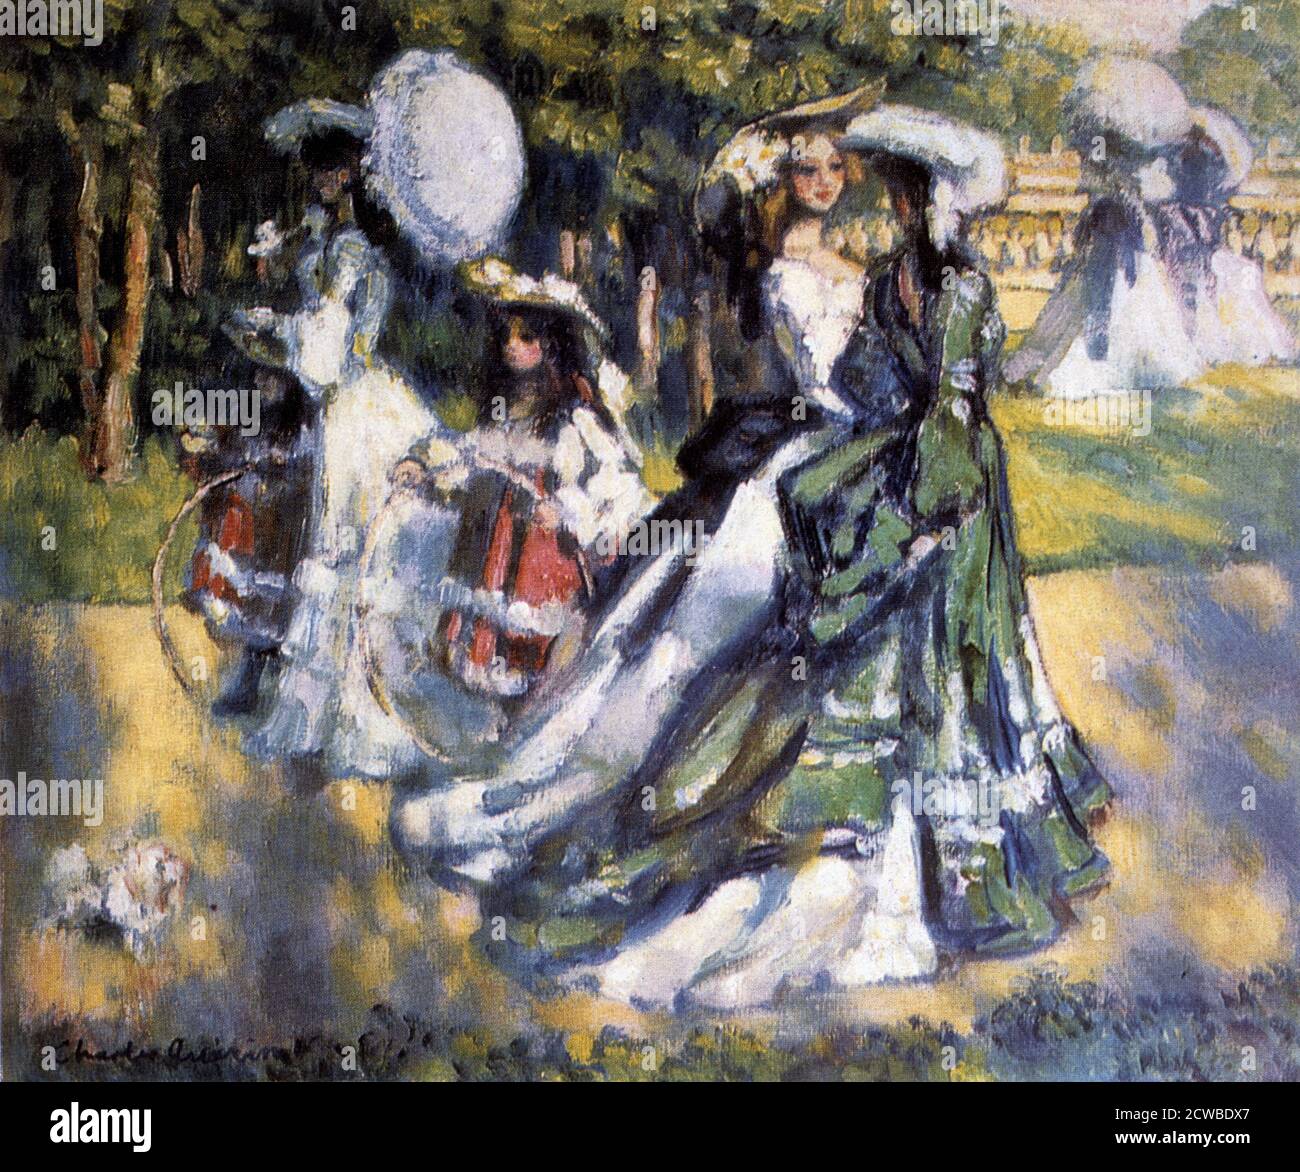 'Promenade', c1911 artiste: Charles Guerin. En tant qu'admirateur de Monet et Renoir, Charles François Prosper Guerin a pris la technique des impressionnistes et l'a appliquée dans son propre style, avec une utilisation inhabituelle et originale de la couleur. Banque D'Images